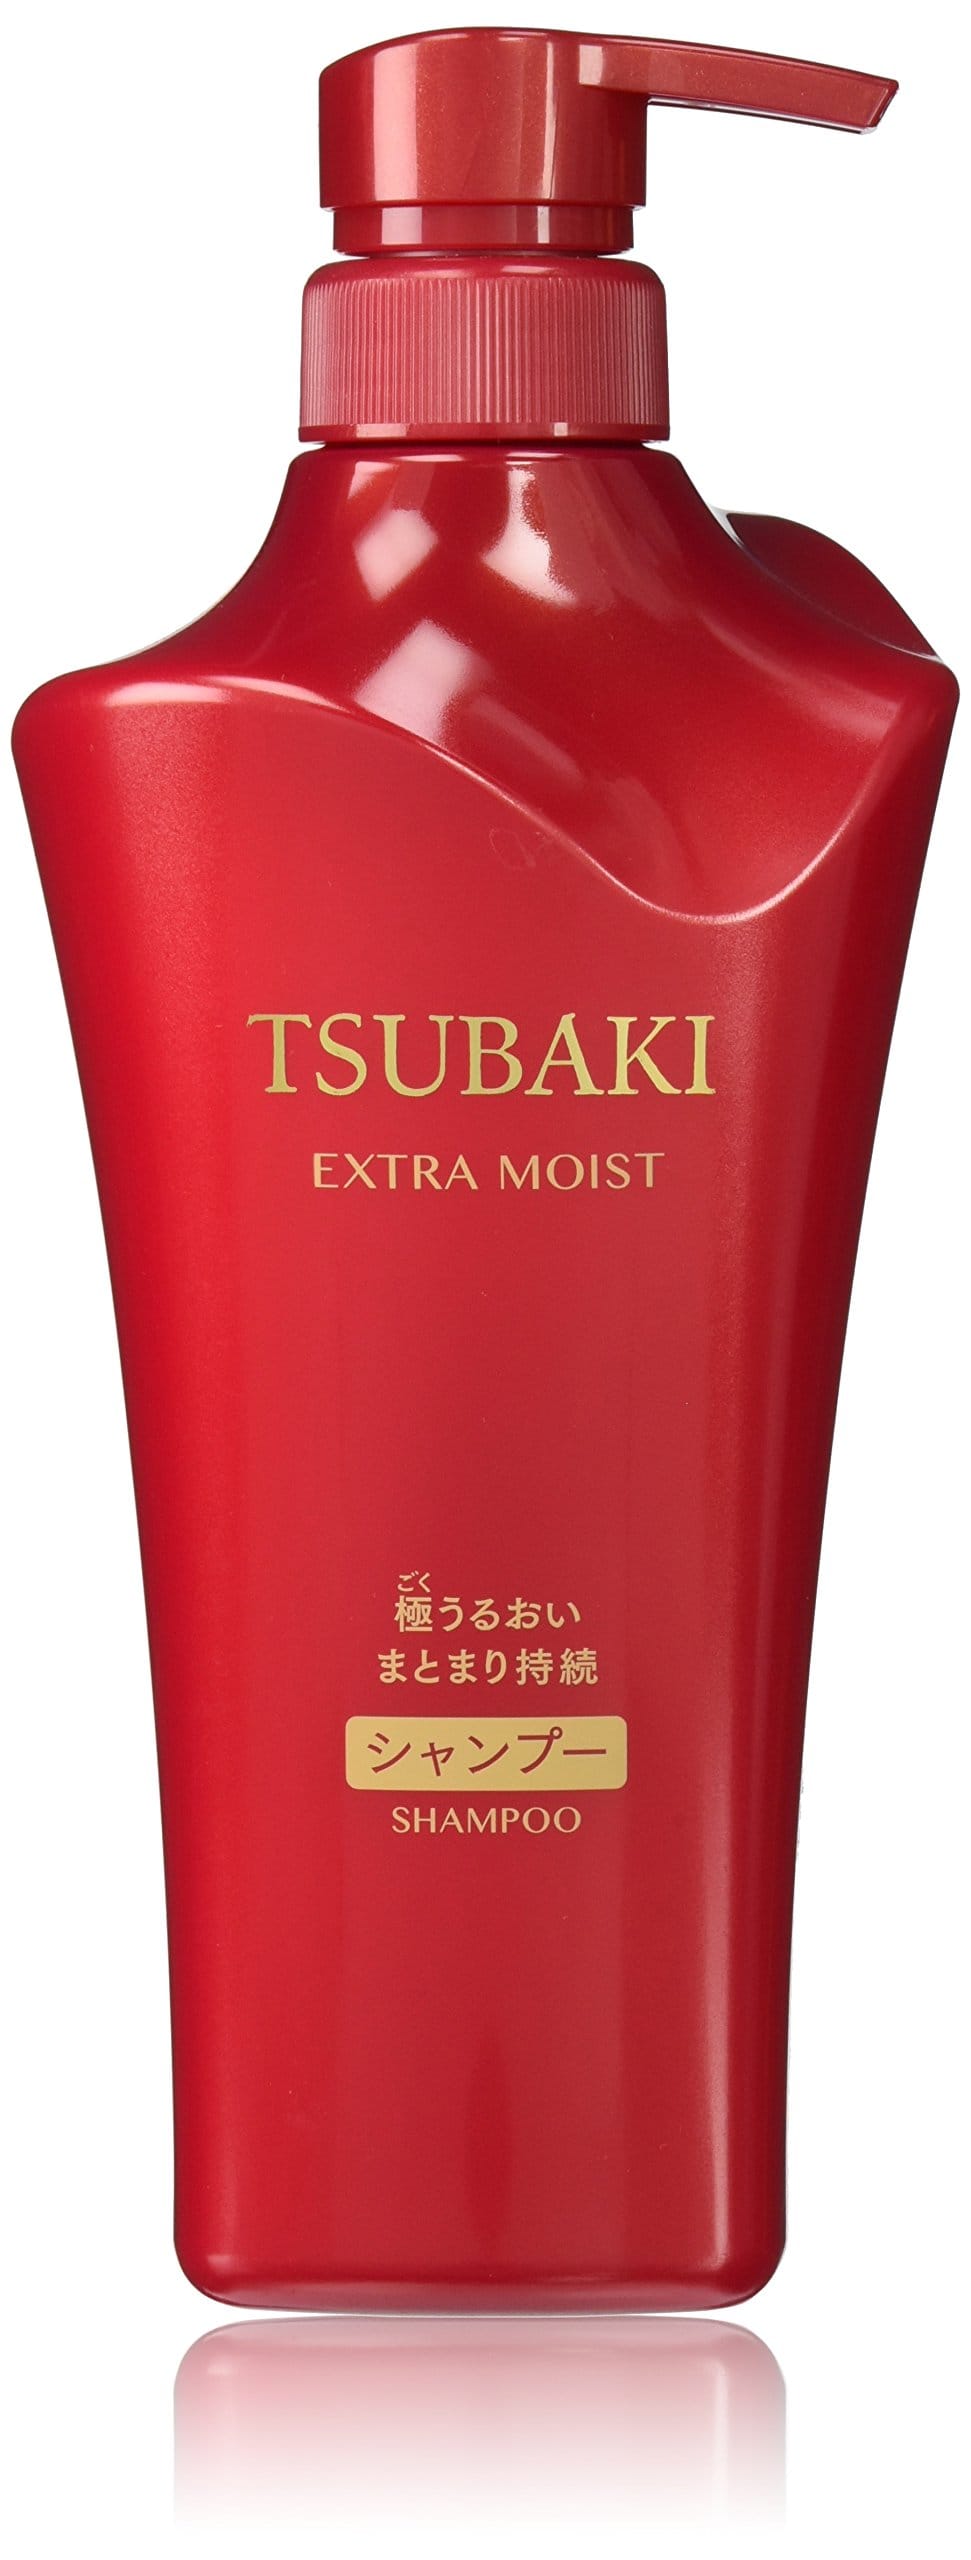 TSUBAKI(ツバキ) エクストラモイスト シャンプー (パサついて広がる髪用) ジャンボサイズ 500mL